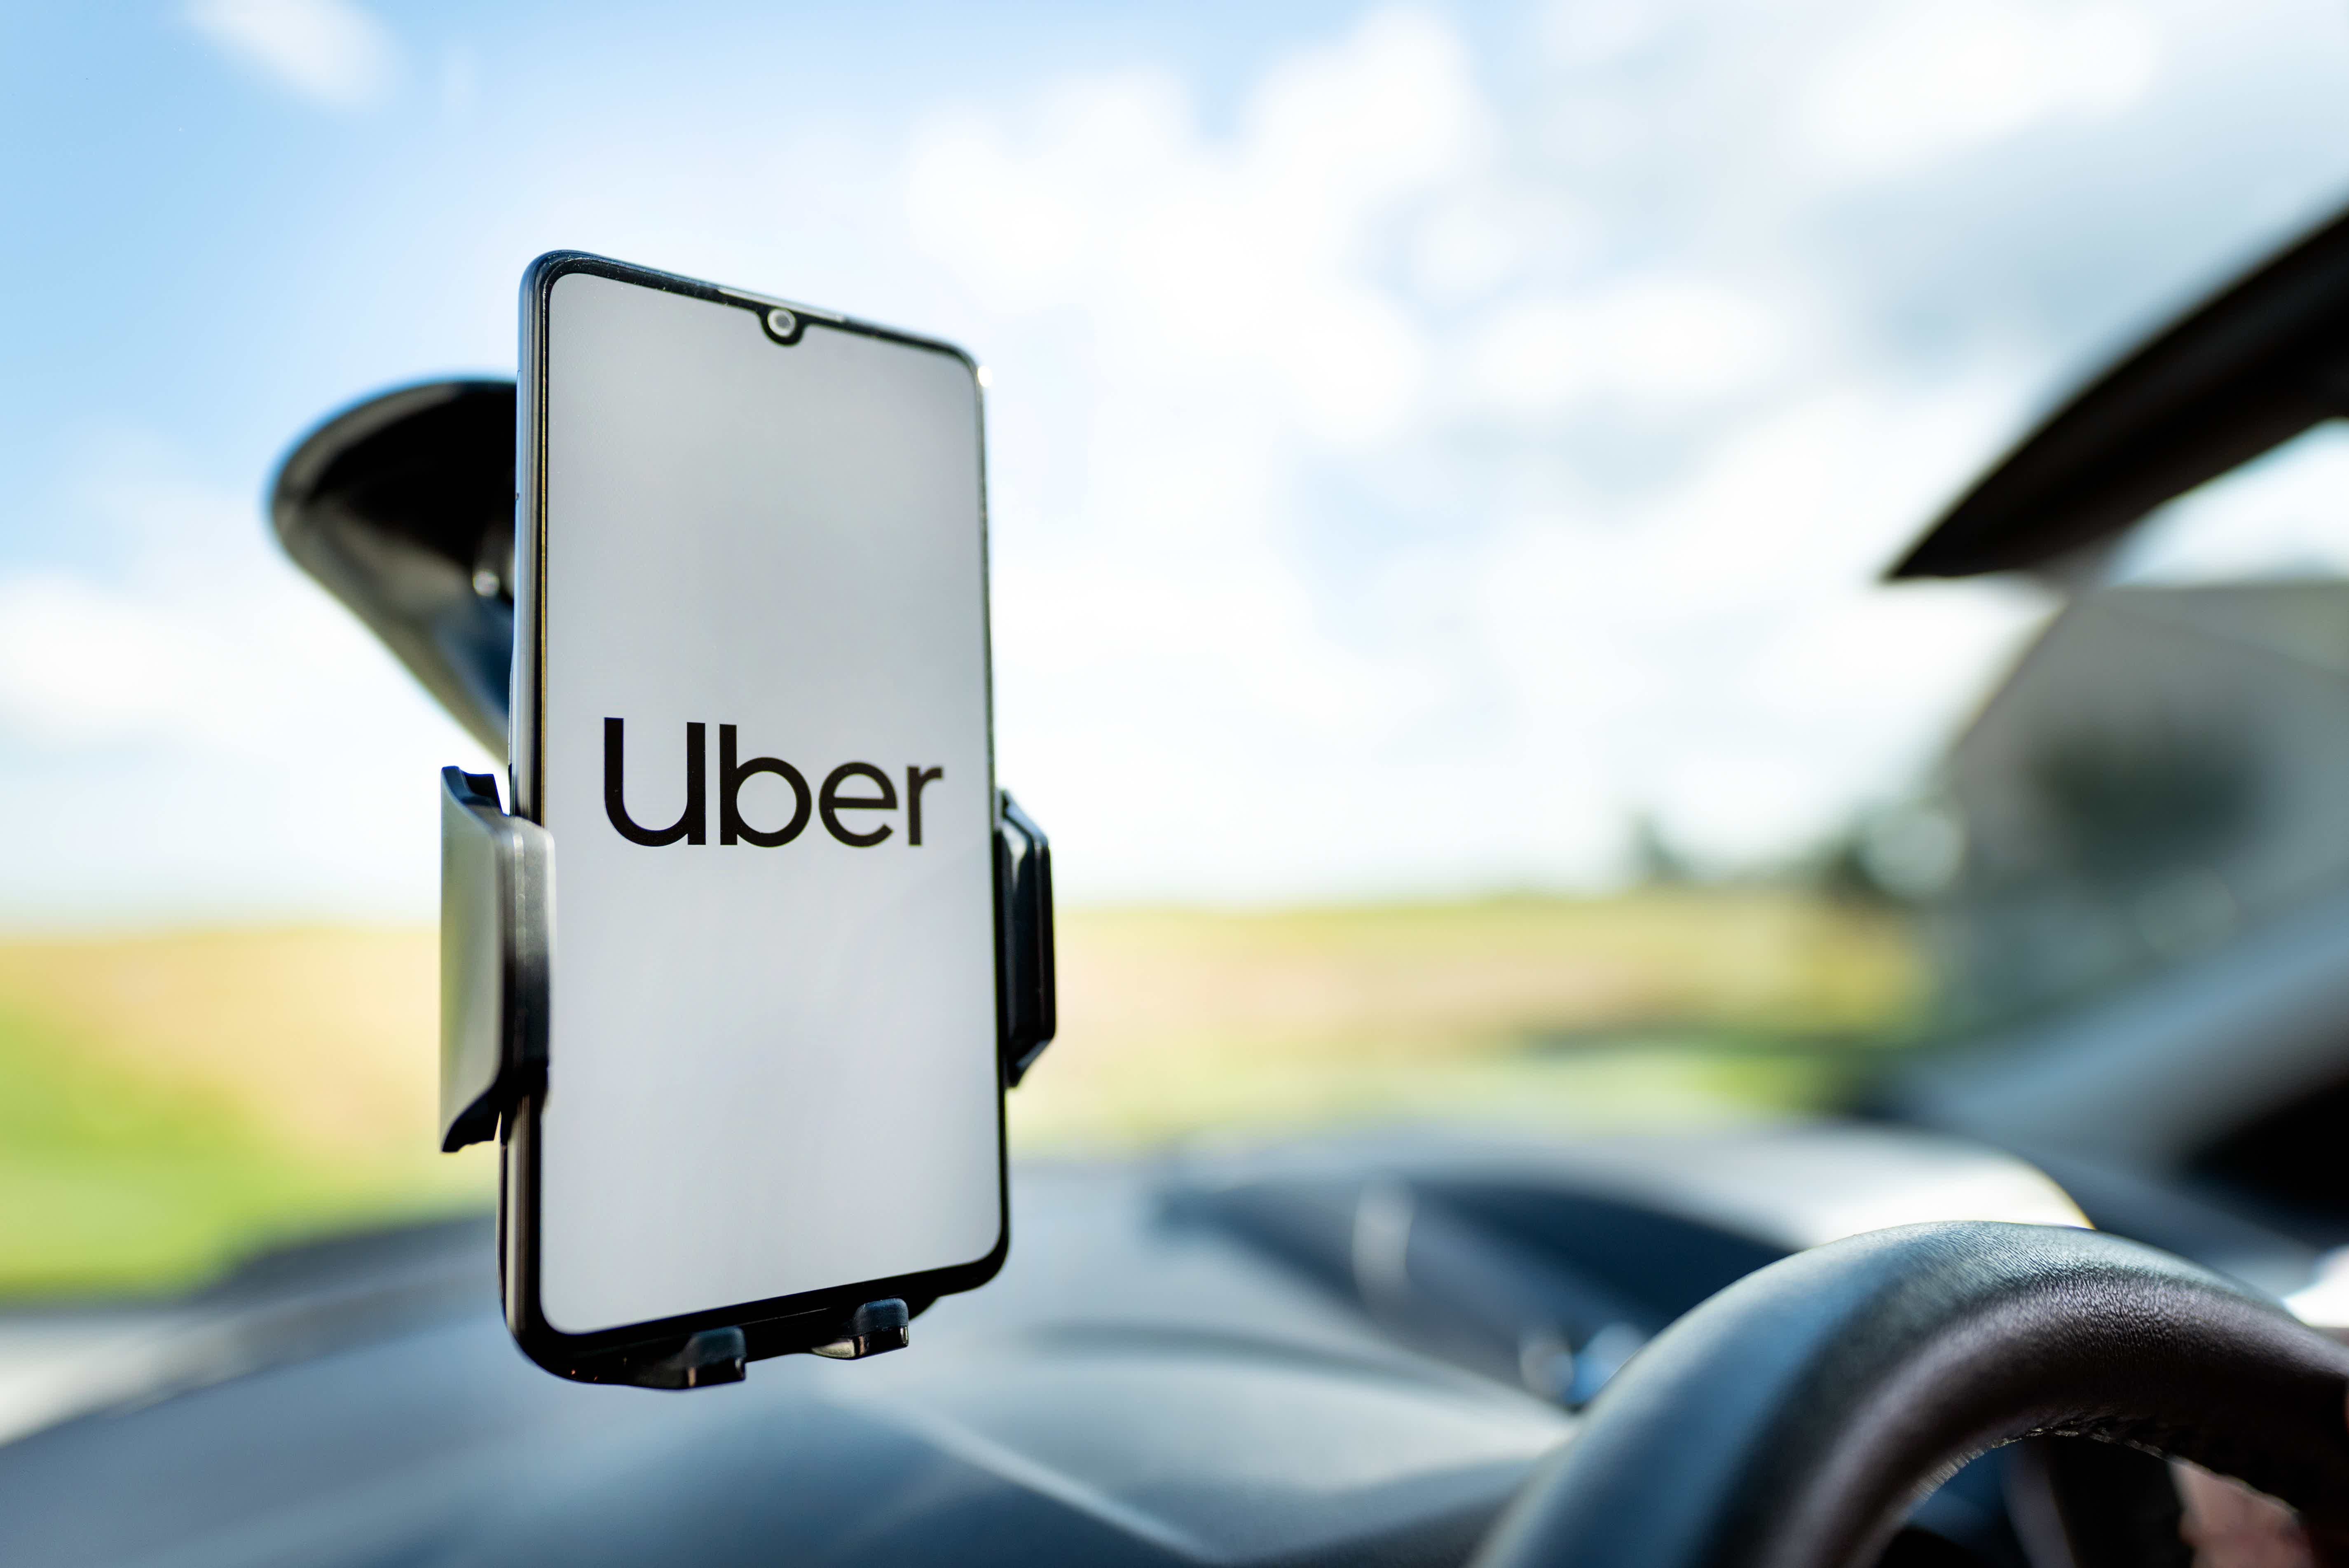 Celular com aplicativo Uber preso em vidro de carro com suporte